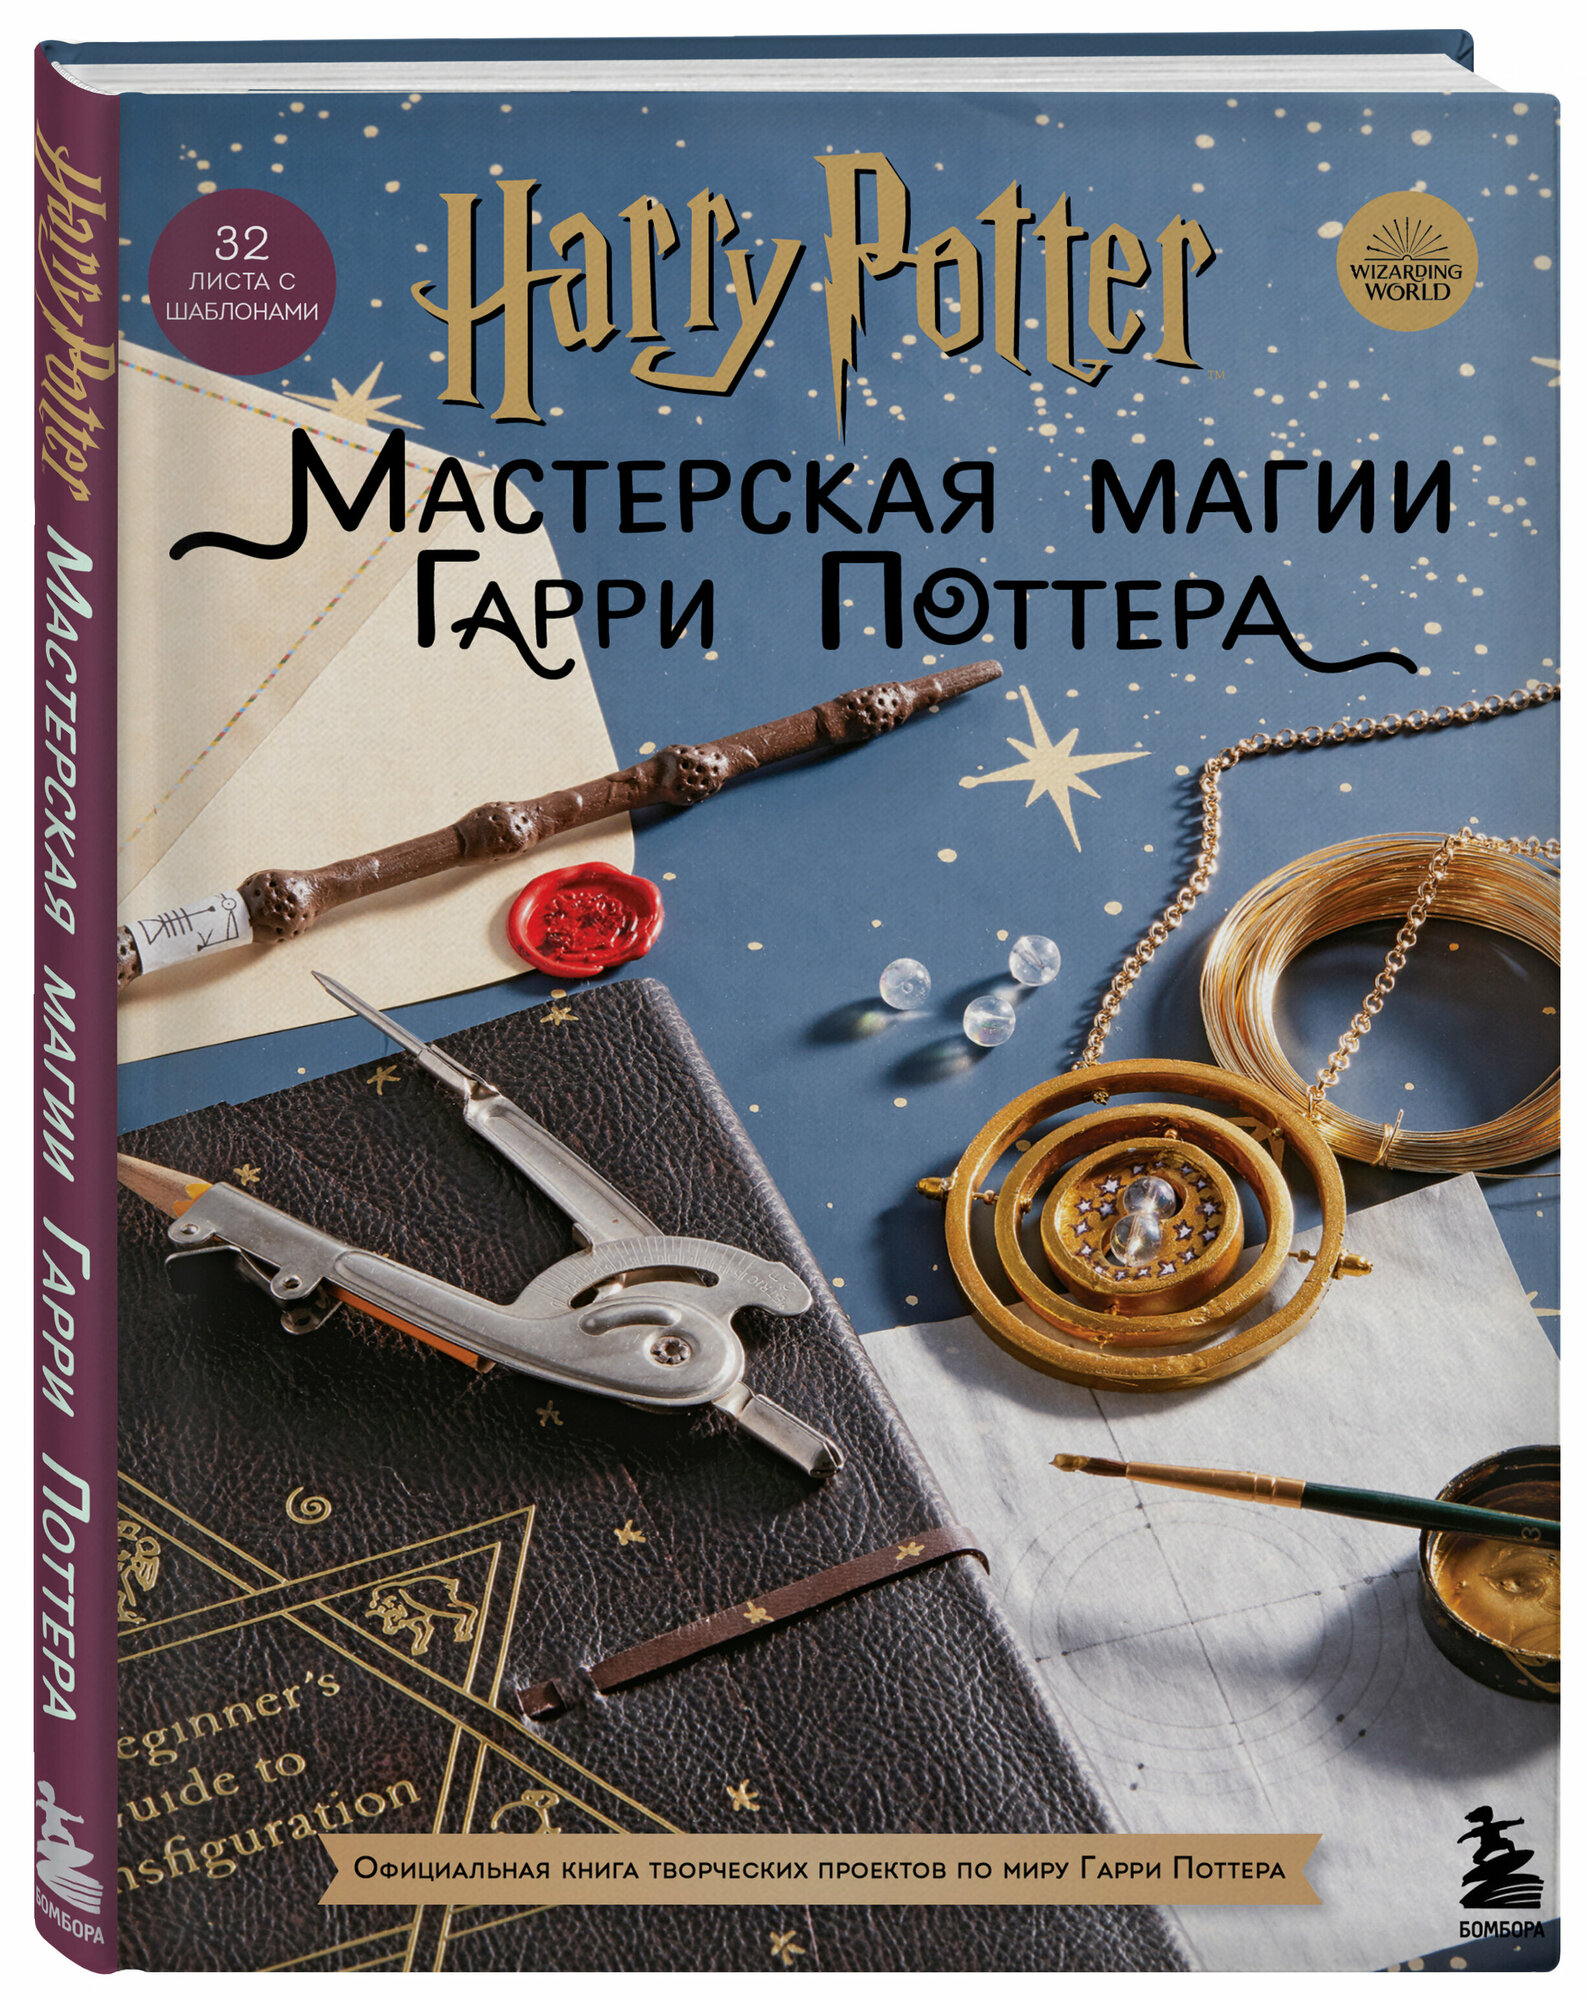 Harry Potter. Мастерская МАГИИ Гарри Поттера. Официальная книга творческих проектов по миру Гарри Поттера - фото №1